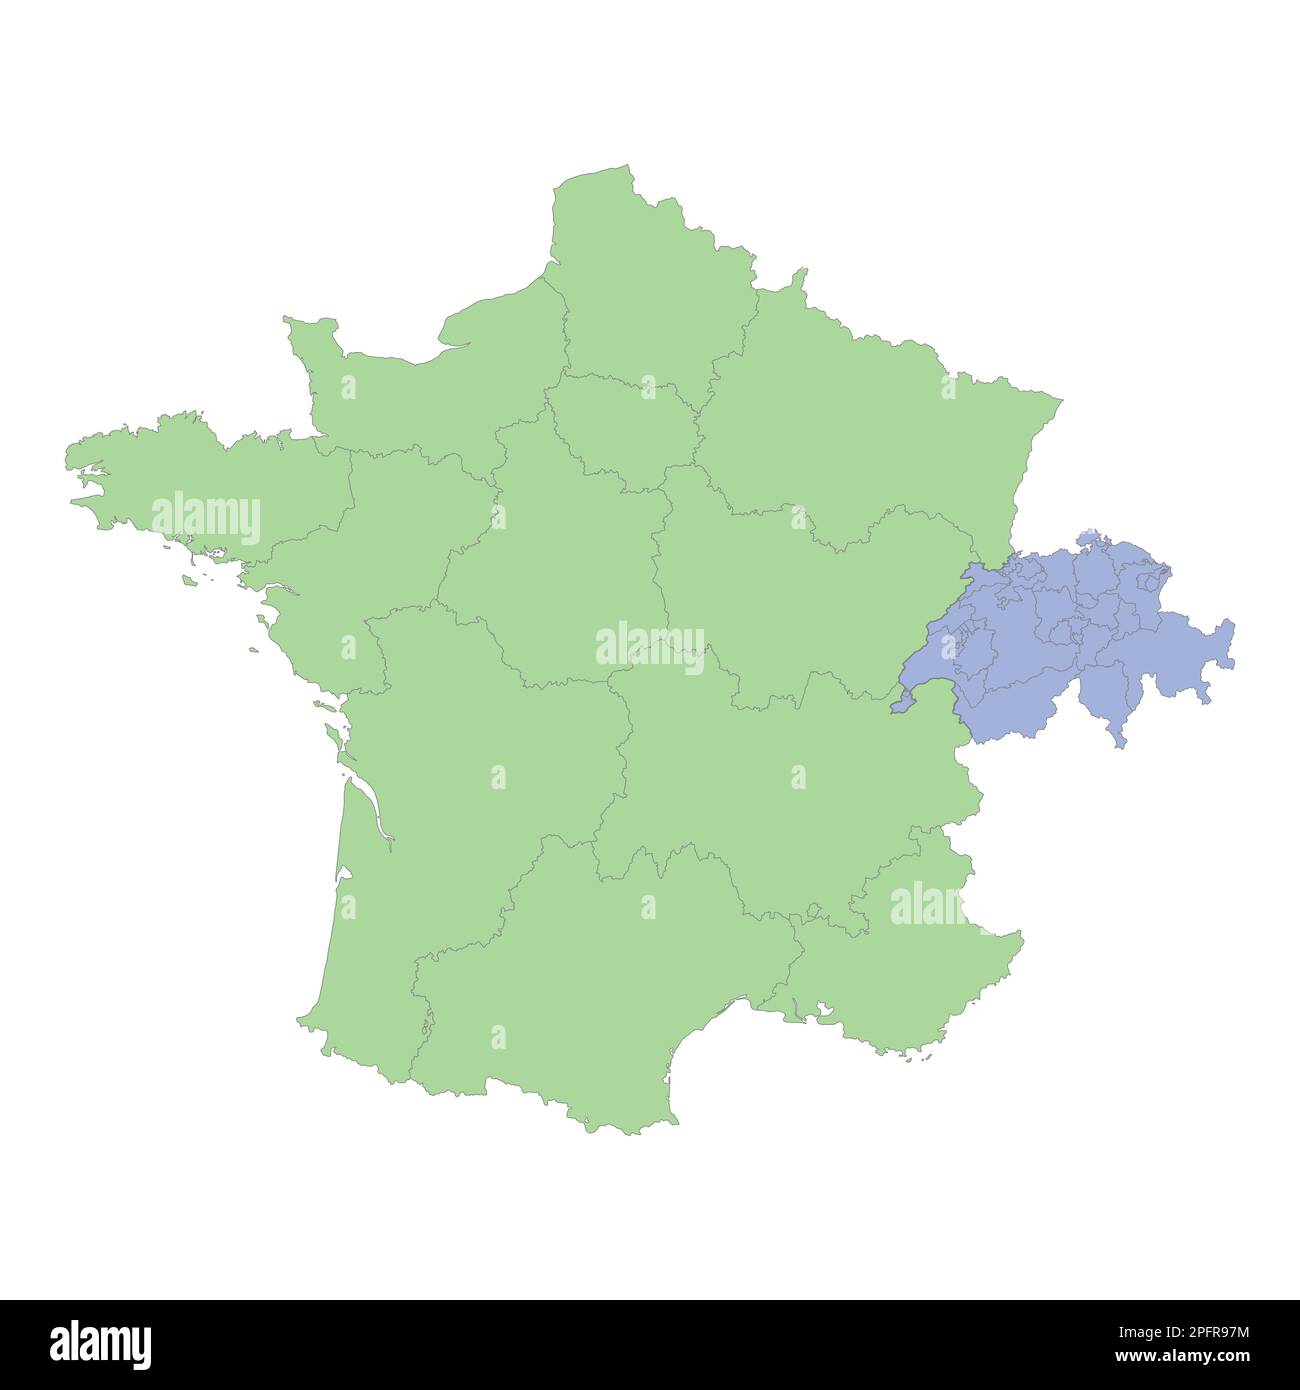 Carta politica di alta qualità della Francia e della Svizzera con i confini delle regioni o delle province. Illustrazione vettoriale Illustrazione Vettoriale